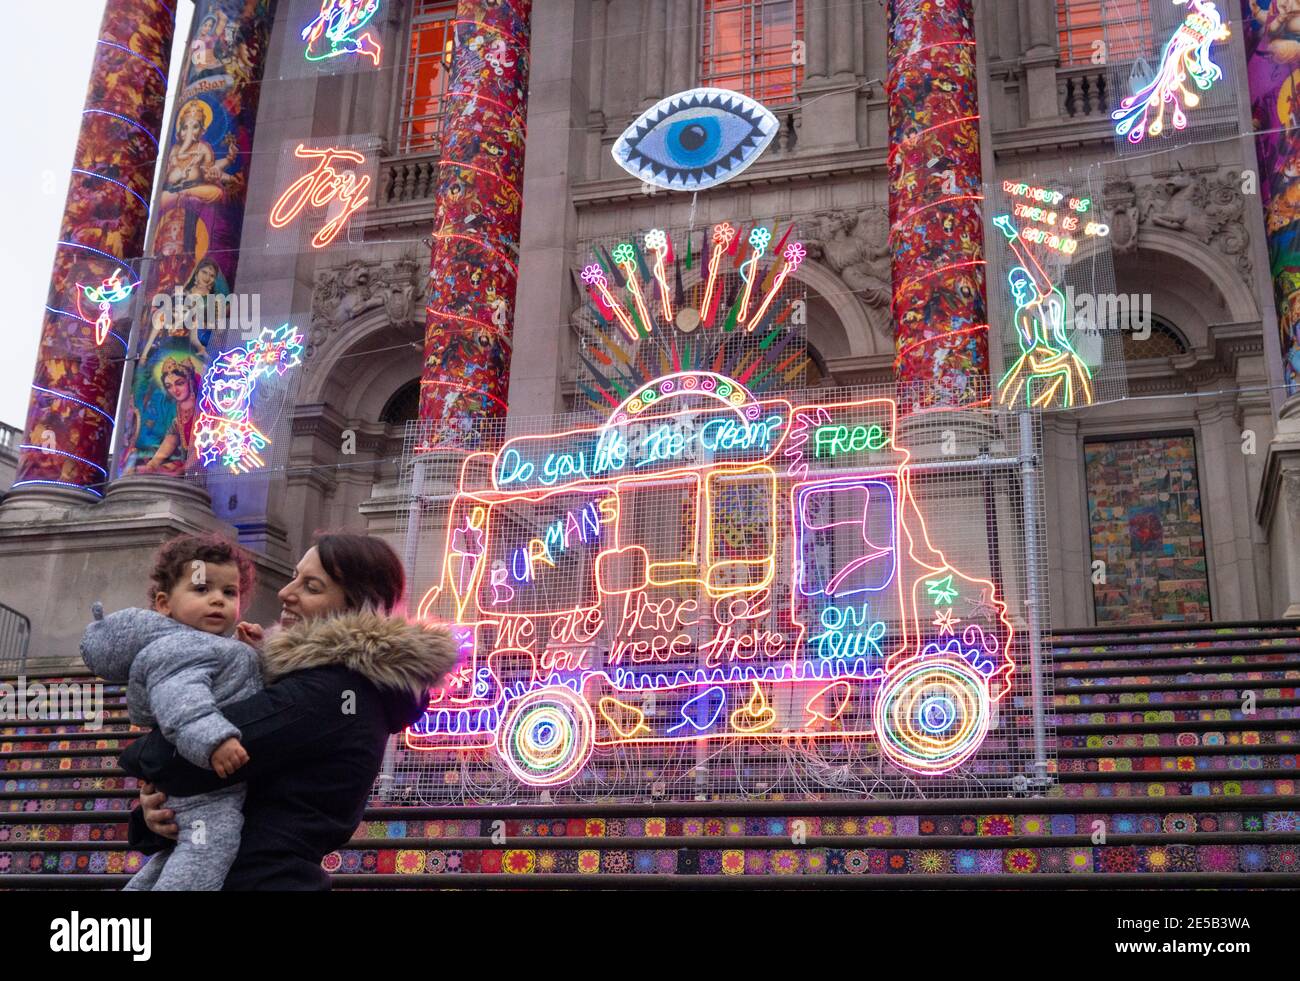 Andrea Tyrimos und ihr Sohn Koa betrachten "Remembering a Brave New World" von Chila Kumari Singh Burman, außerhalb der Tate Britain in London während Englands dritter nationaler Sperre, um die Ausbreitung des Coronavirus einzudämmen. Bilddatum: Mittwoch, 27. Januar 2021. Stockfoto